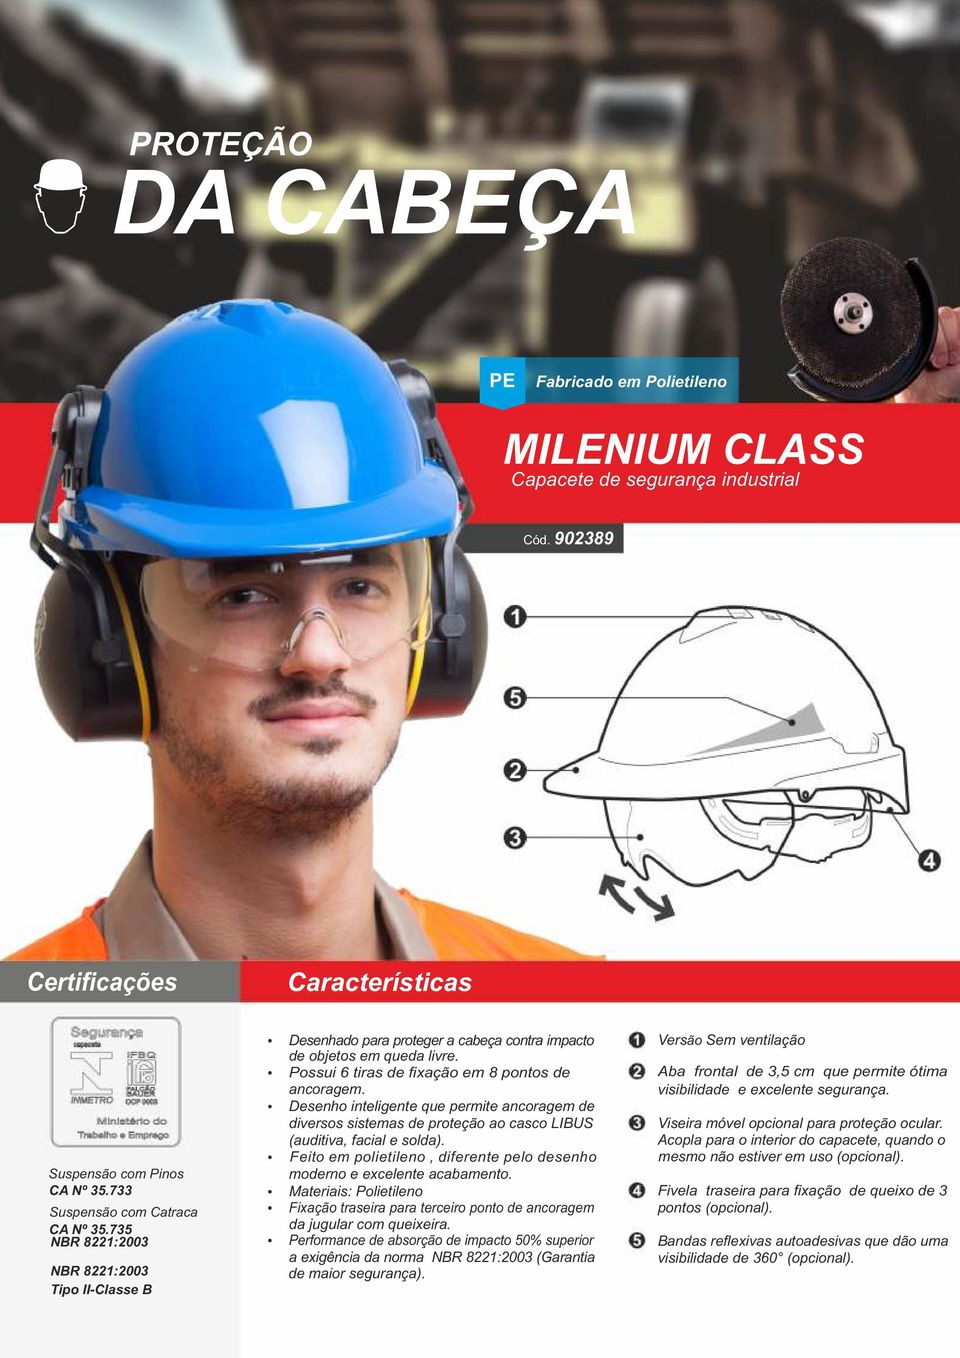 Desenho inteligente que permite ancoragem de diversos sistemas de proteção ao casco LIBUS (auditiva, facial e solda). Feito em polietileno, diferente pelo desenho moderno e excelente acabamento.